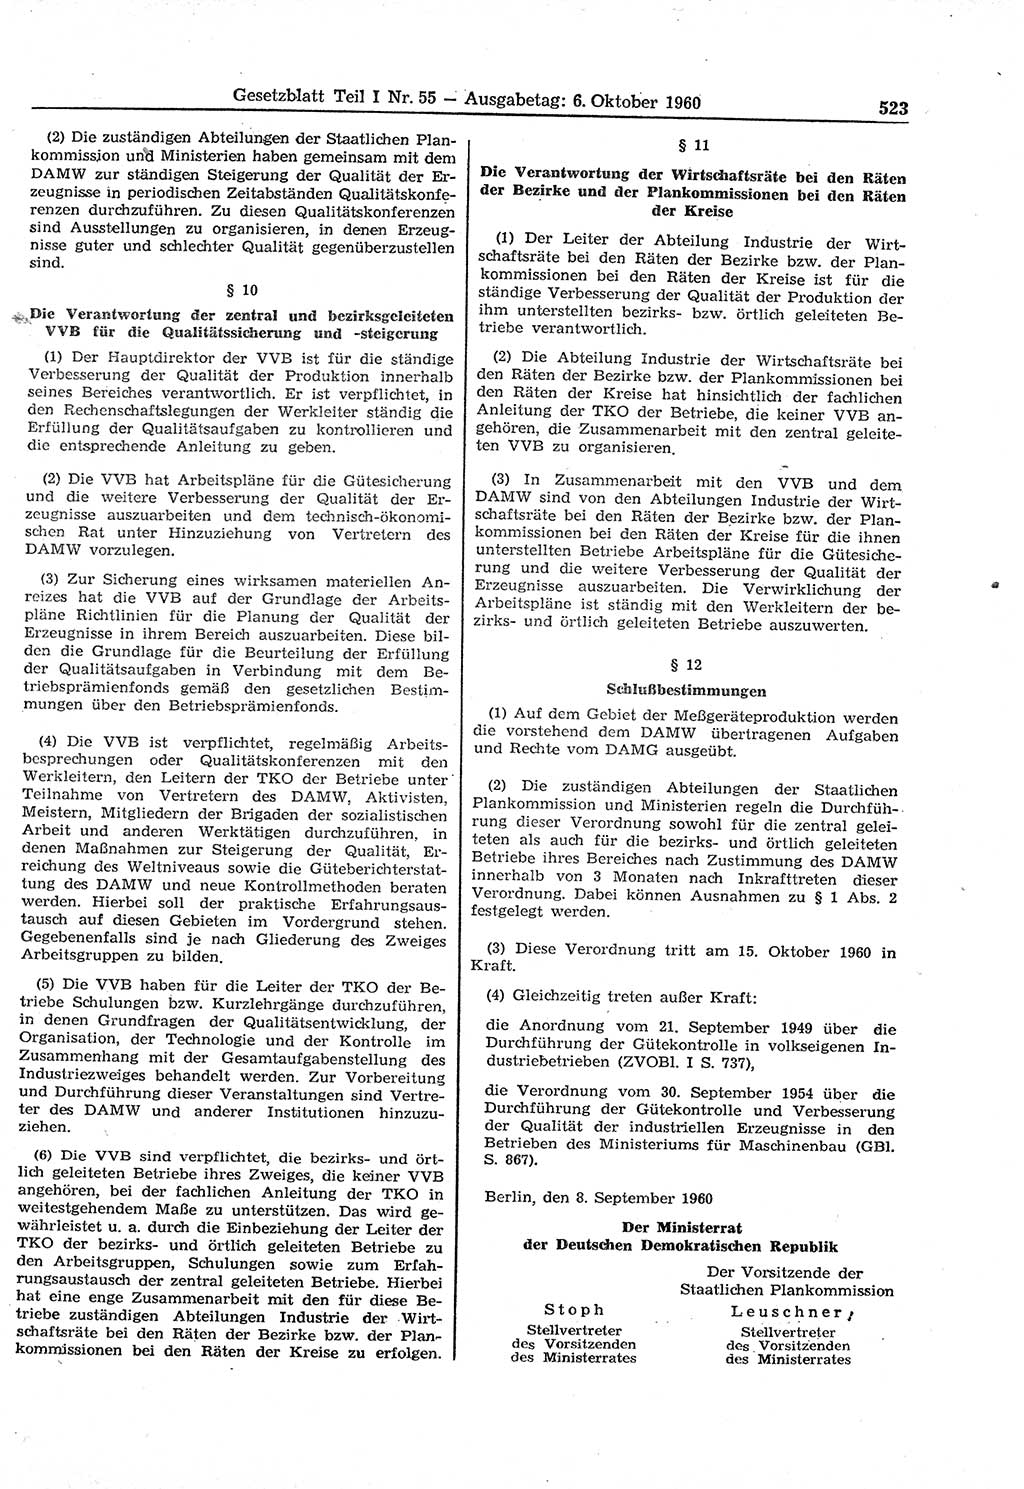 Gesetzblatt (GBl.) der Deutschen Demokratischen Republik (DDR) Teil Ⅰ 1960, Seite 523 (GBl. DDR Ⅰ 1960, S. 523)